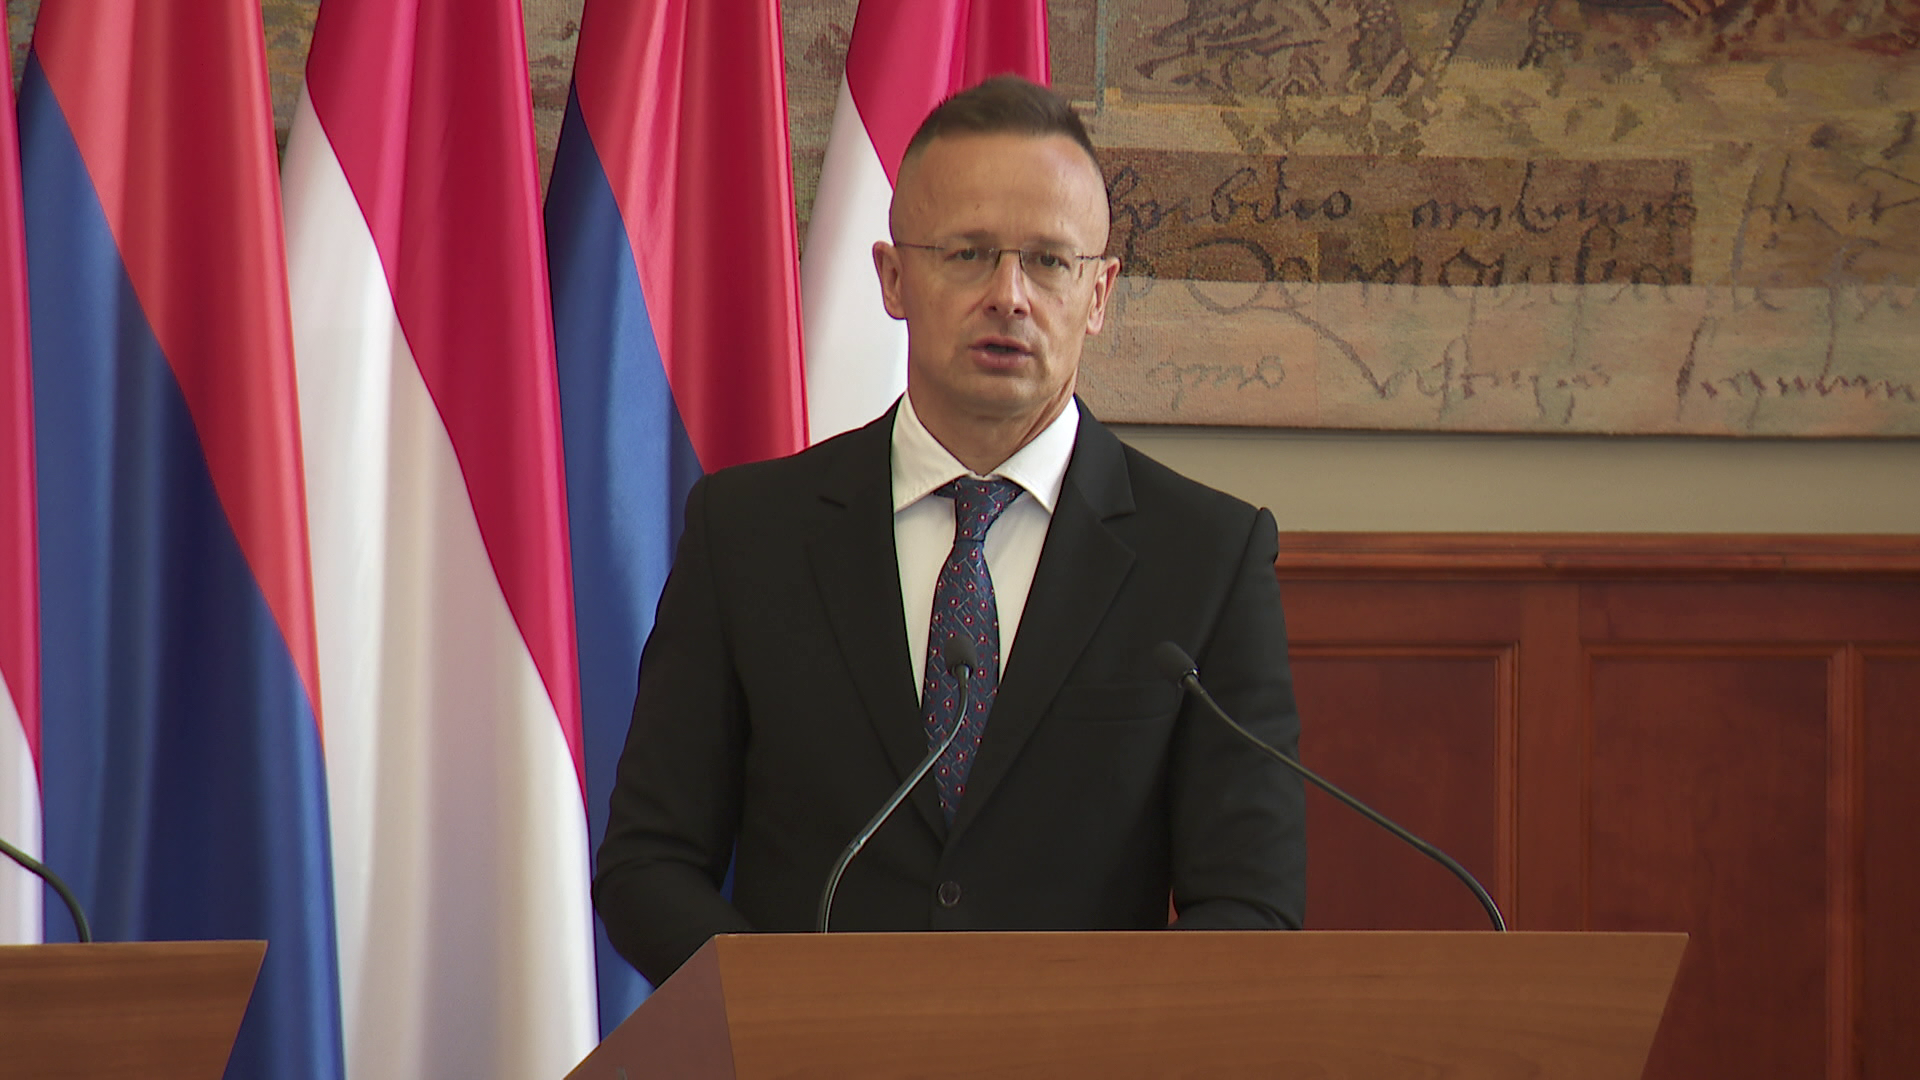 Szijjártó Péter: Magyarország szeretne hozzájárulni a béketeremtő folyamatok sikeréhez